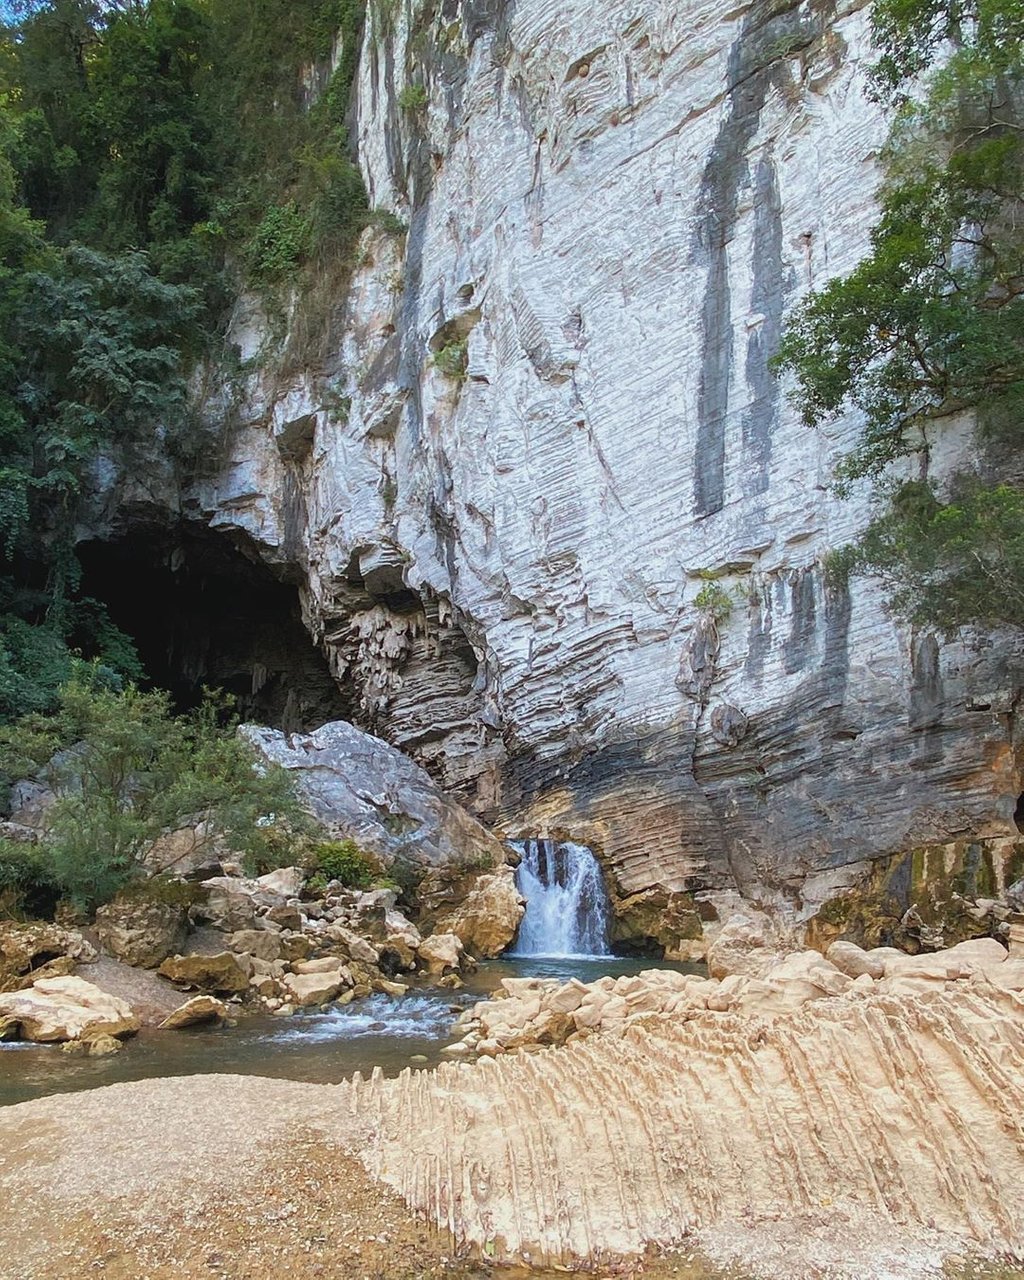 Nàng Ngọc nữ khám phá hang Tú Làn và cắm trại tận hưởng làn nước mát.